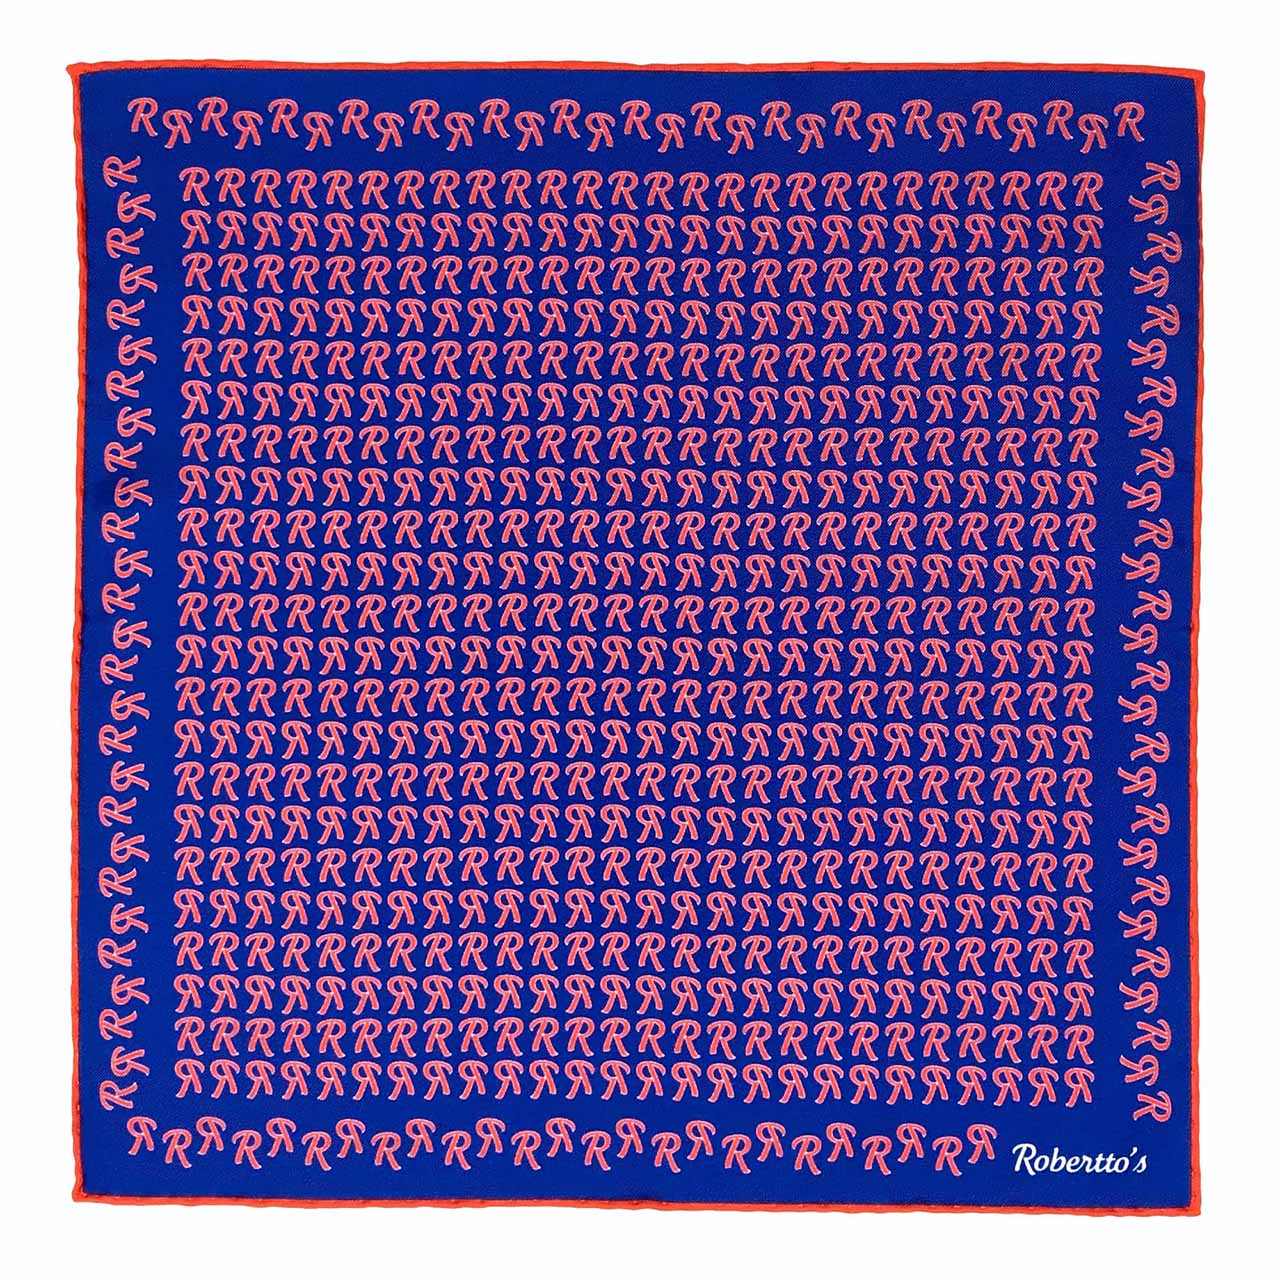 The Monogram Edition Glaucous Blue Pocket Square